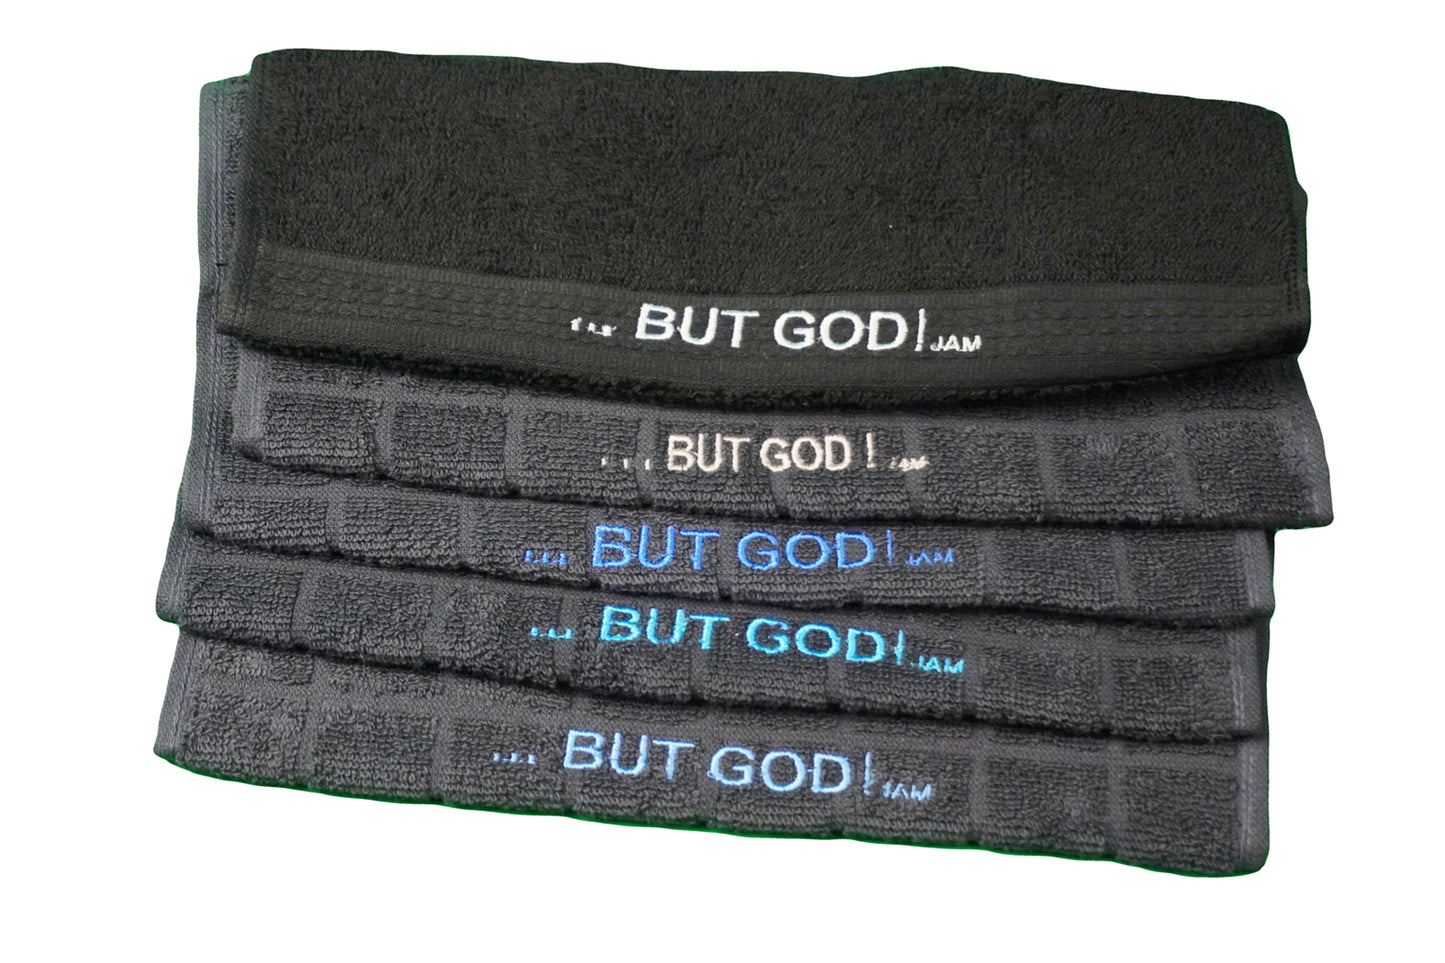 Sweat Towels   ~   " . . . BUT GOD! "